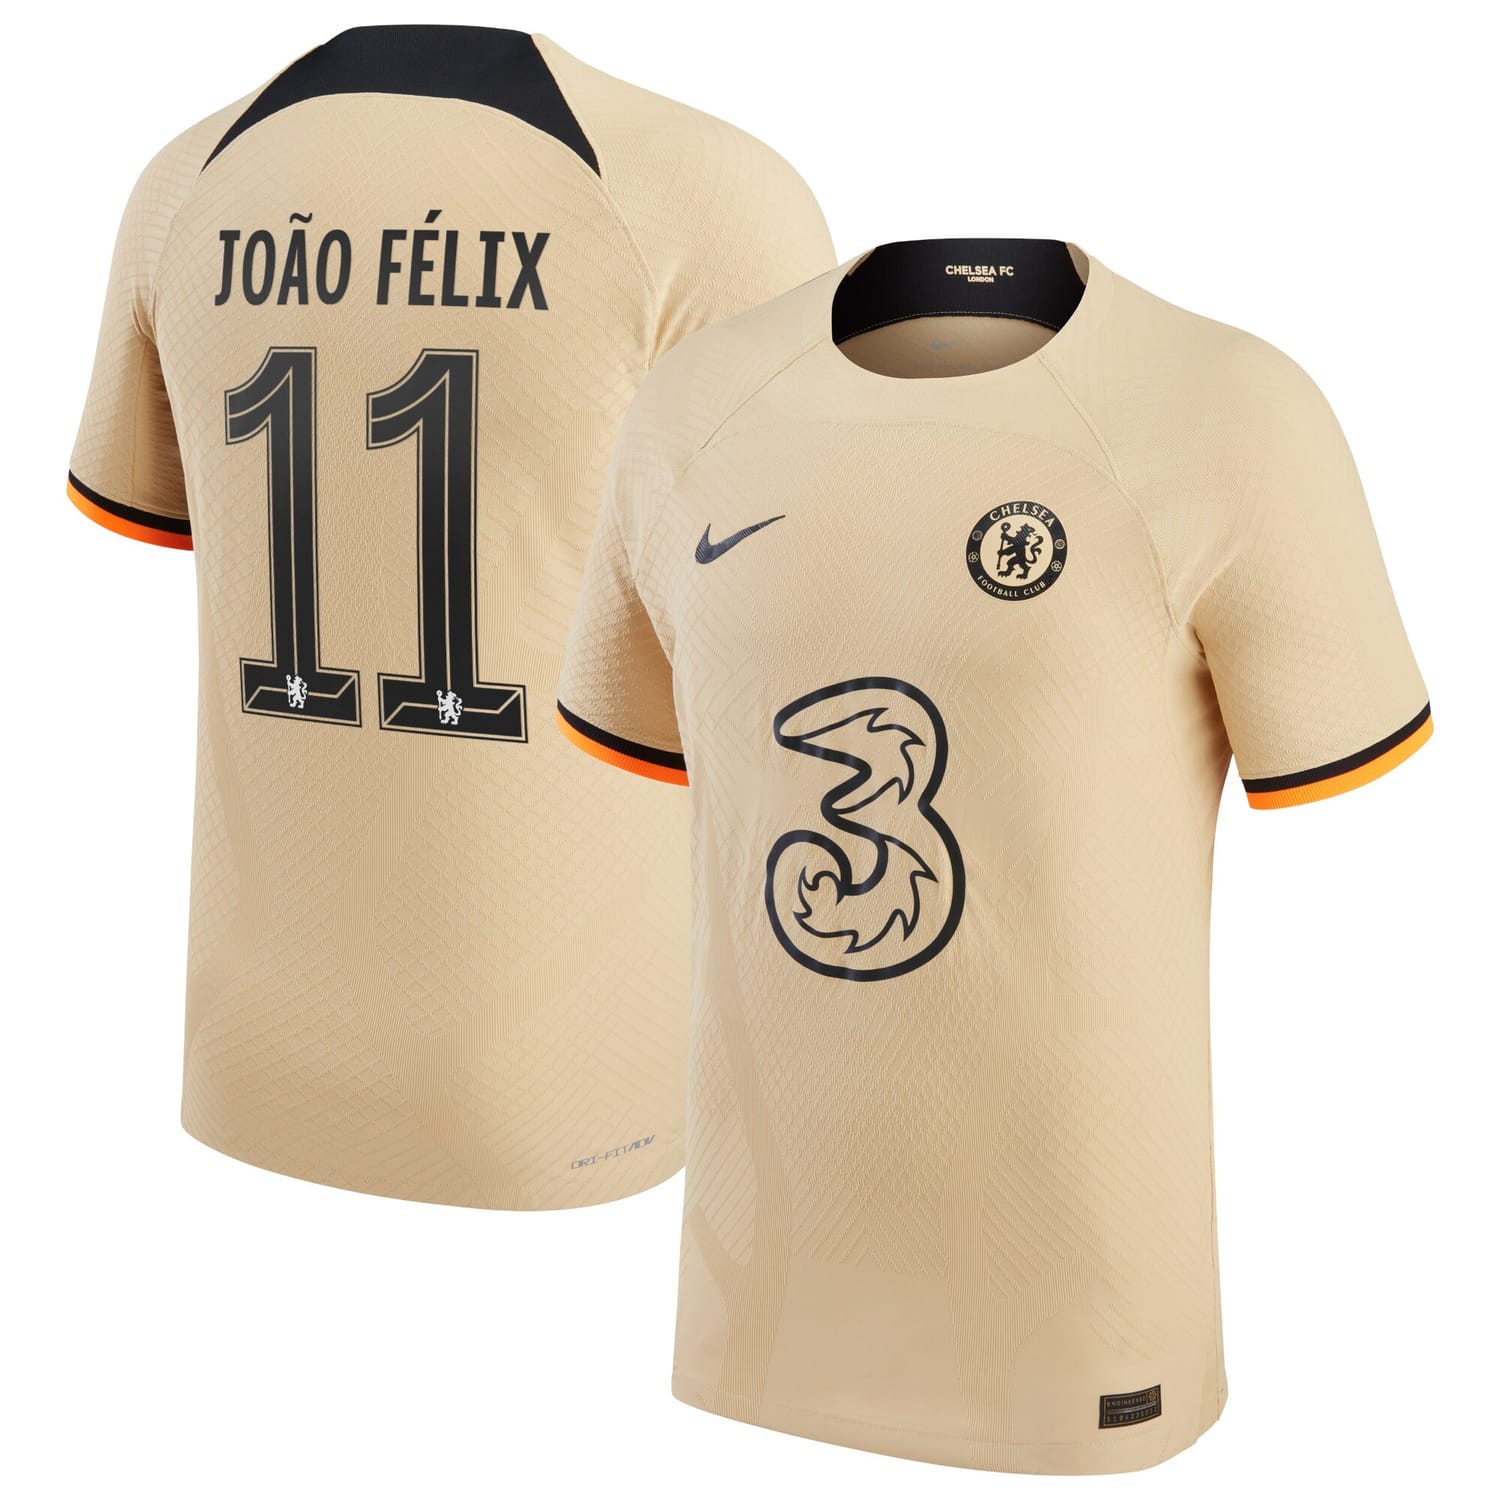 Premier League Chelsea Third Cup Authentic Jersey Shirt 2022-23 player João Félix 11 printing for Men